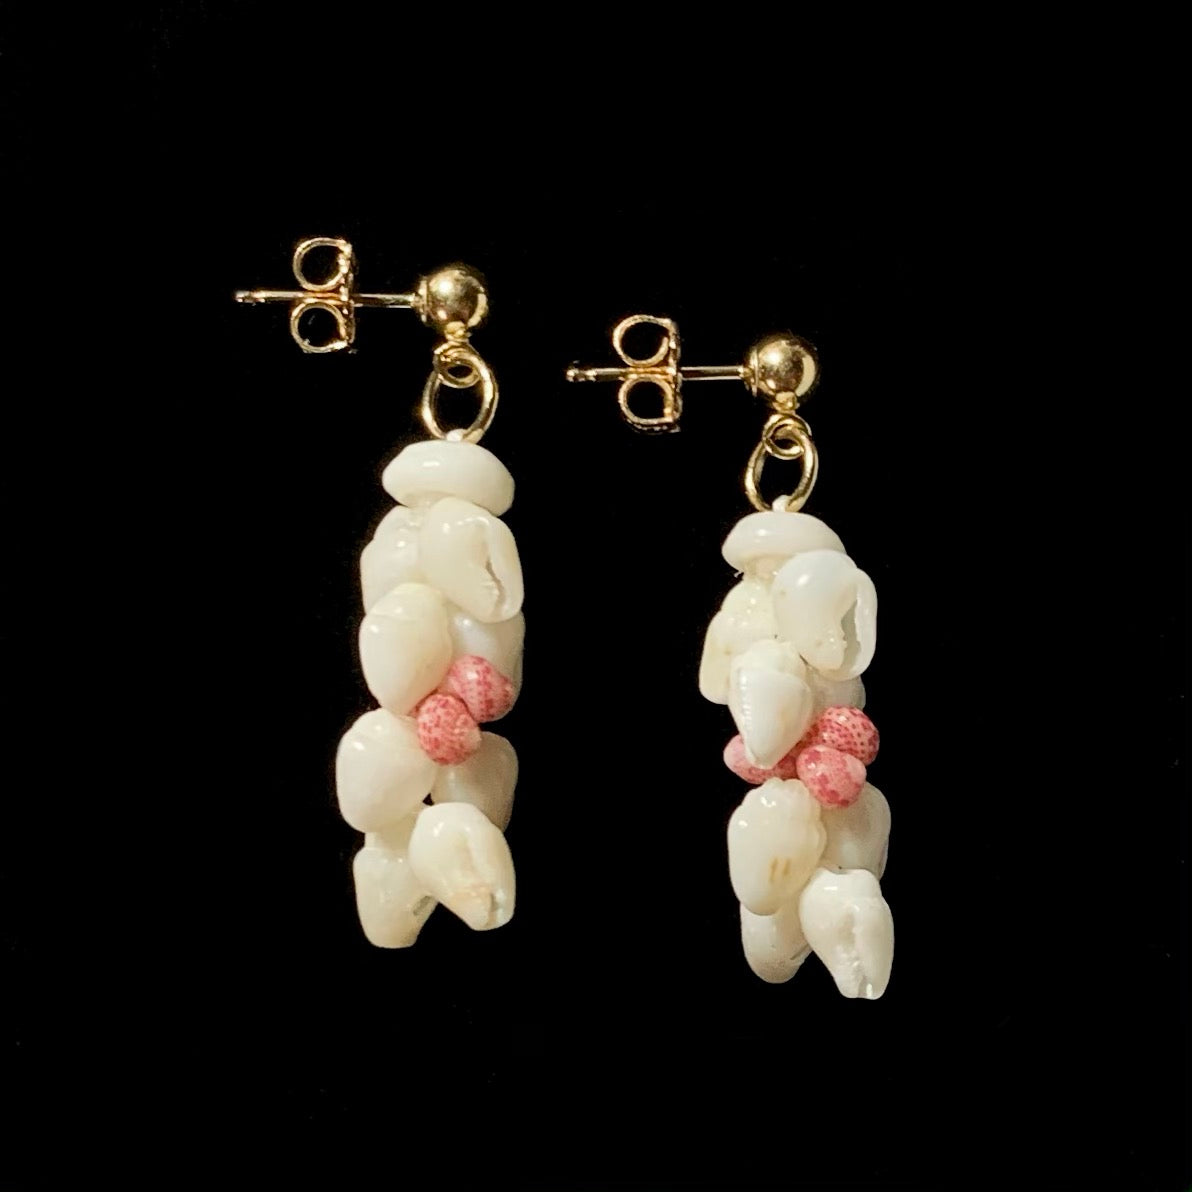 1-inch Kipona Style Ni’ihau Shell Earrings - ‘Akala Pua